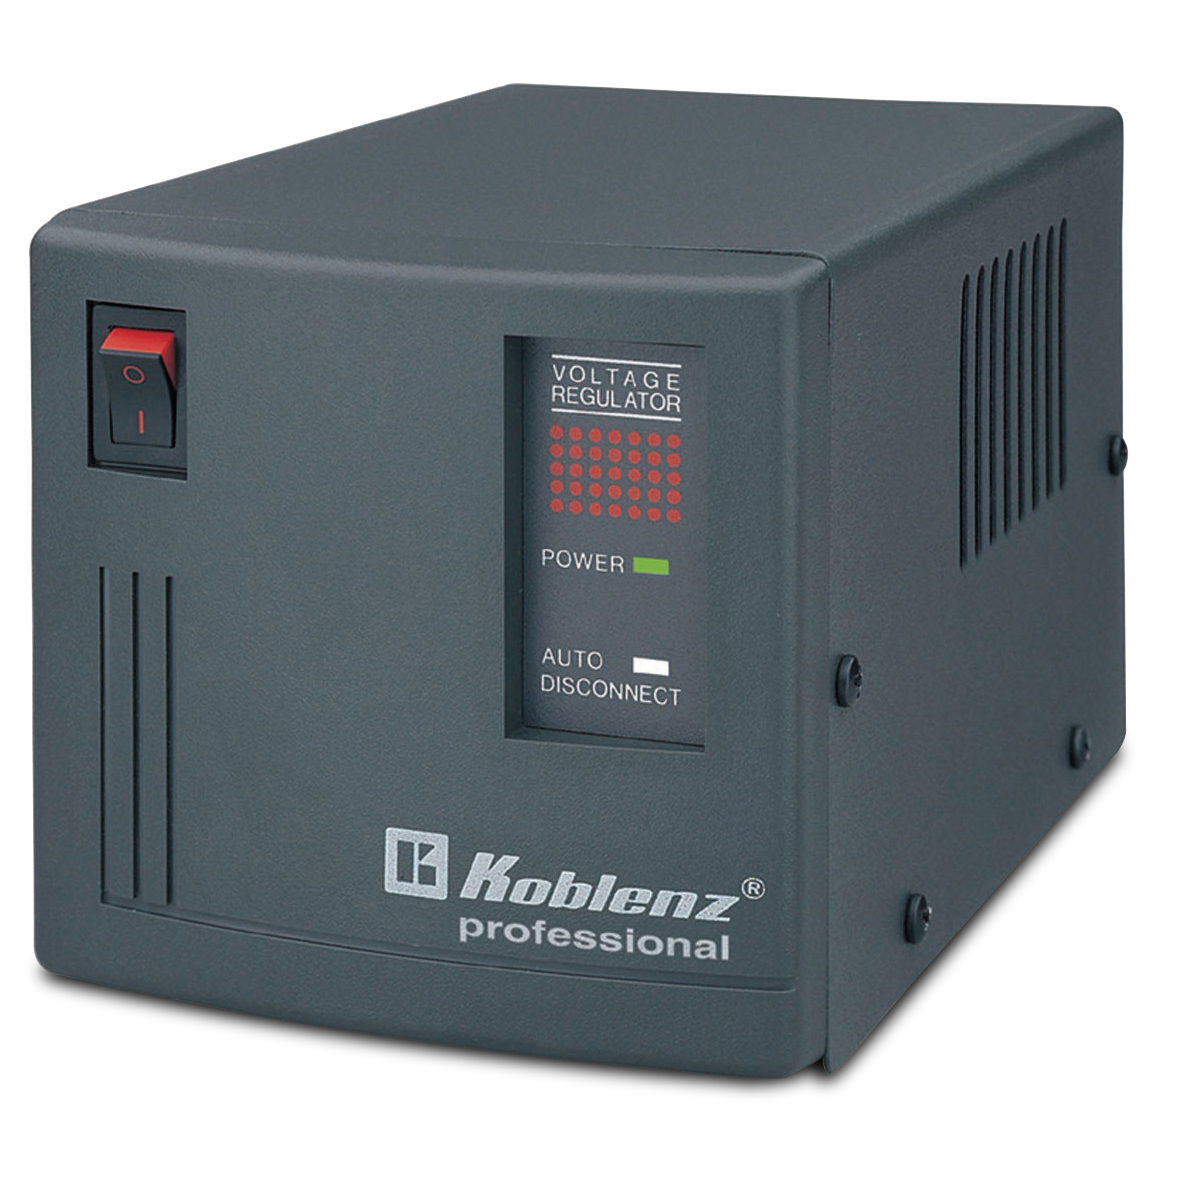 Regulador de Voltaje Koblenz Professional ER-2800 2800 VA 4 contactos Negro